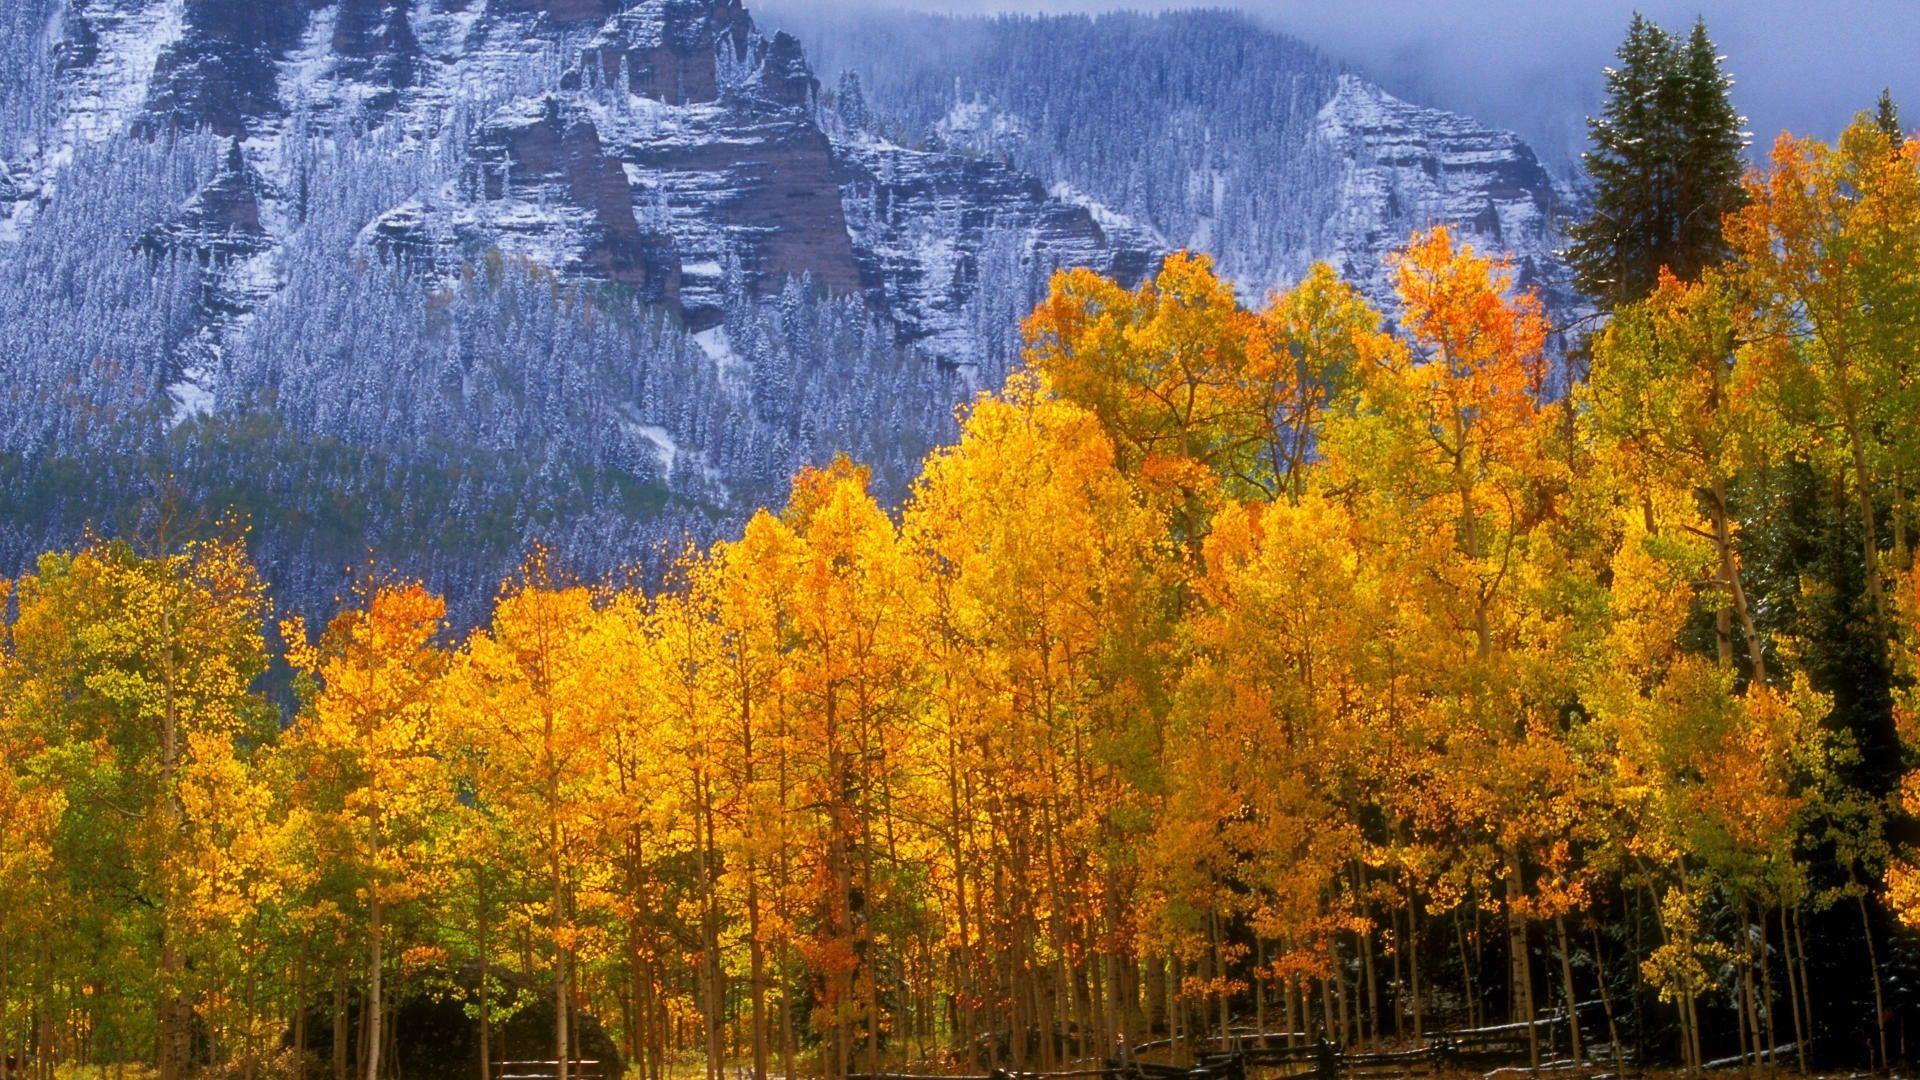 Autumn in Colorado wallpaper. Colorado: Home Sweet Home